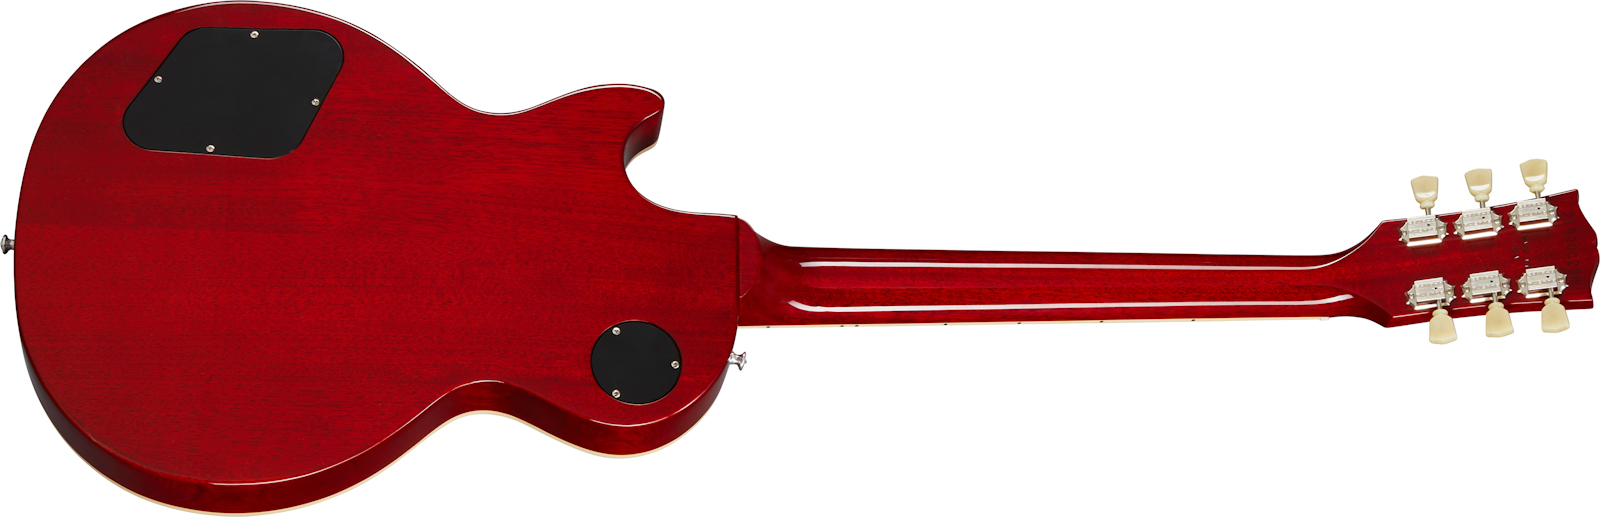 Gibson Les Paul Deluxe 70s Original 2mh Ht Rw - 70s Cherry Sunburst - Guitare Électrique Single Cut - Variation 1